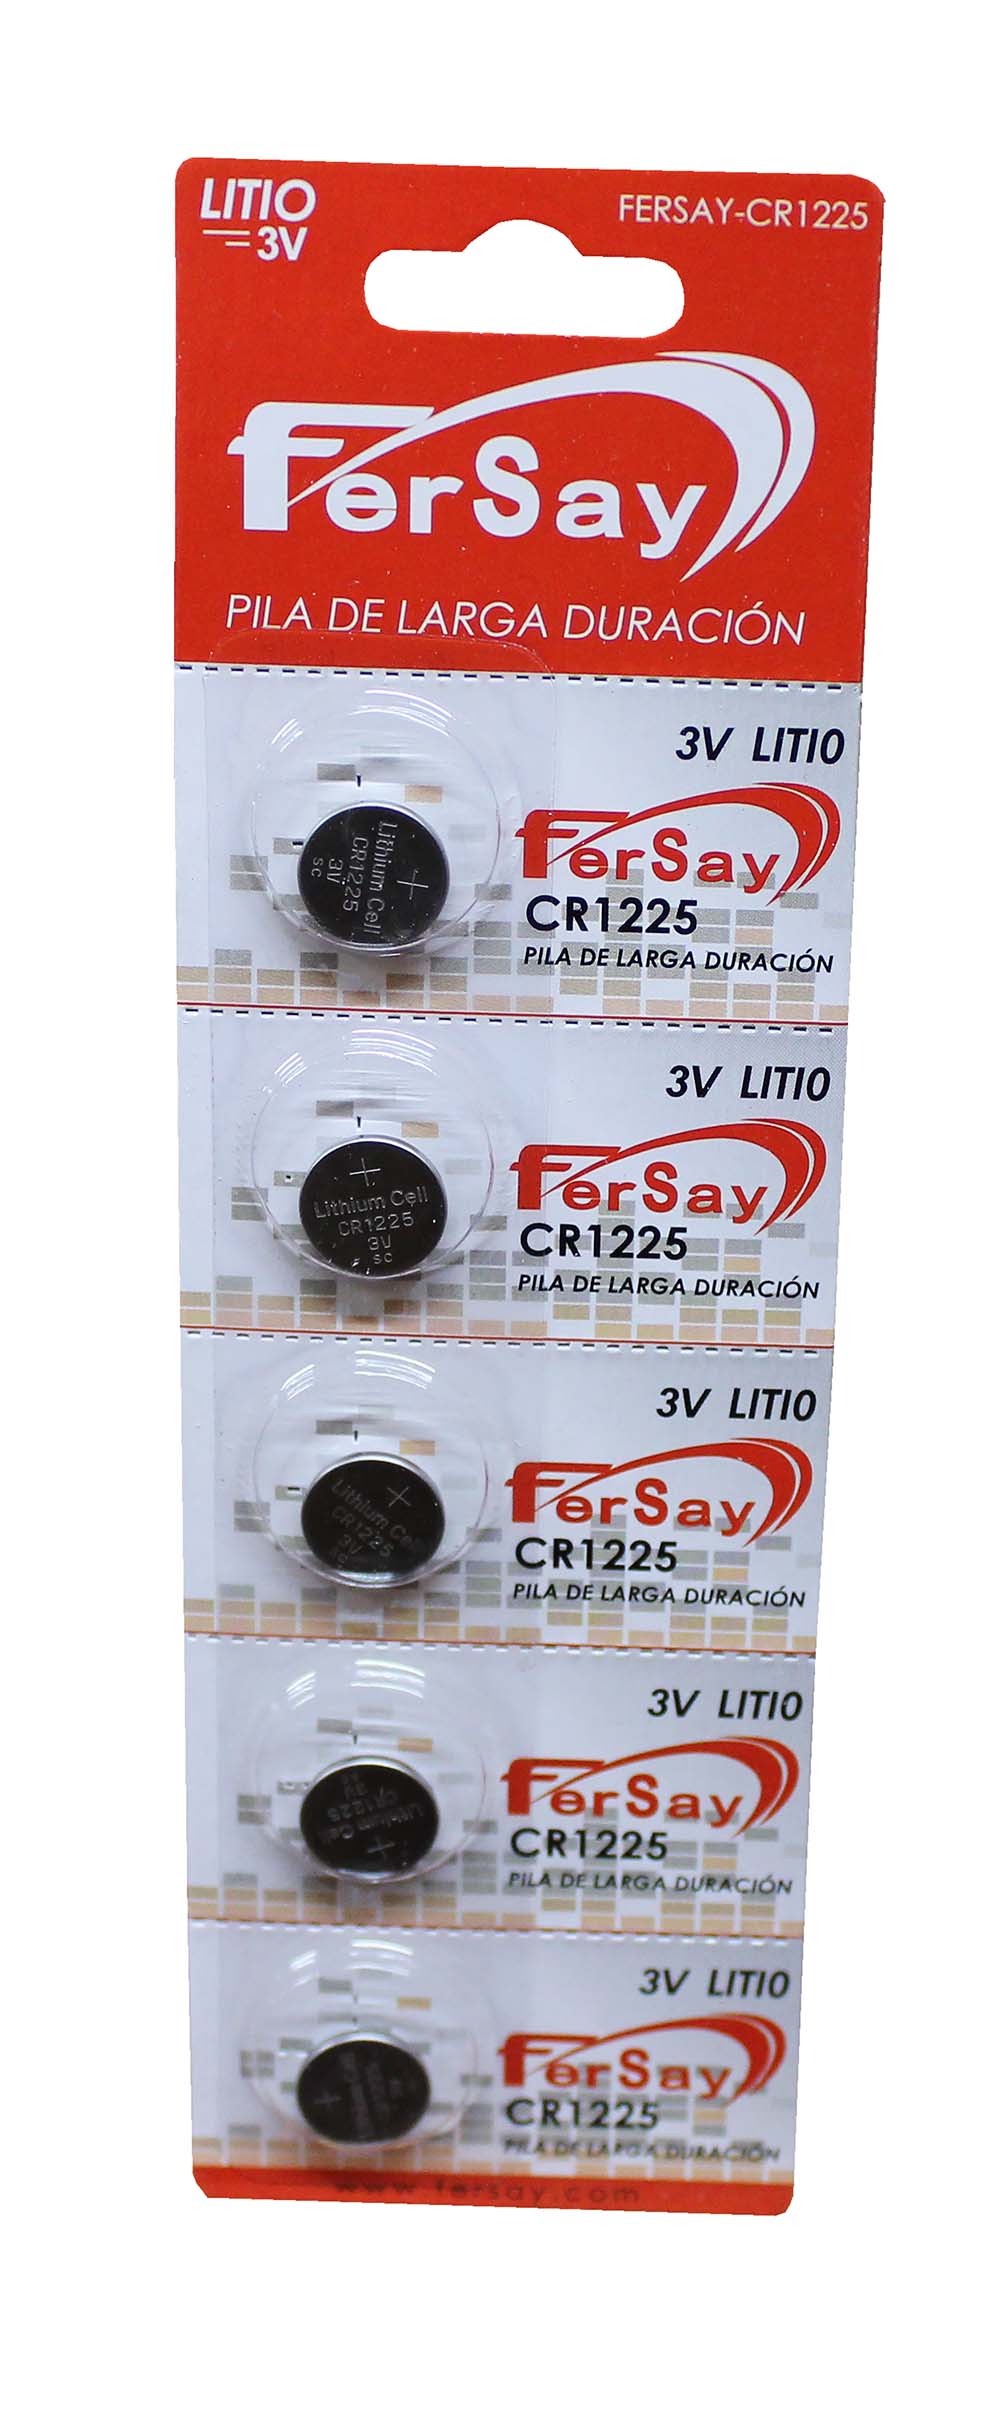 Pila tipo botón formato CR1225 Fersay. - FERSAYCR1225 - FERSAY